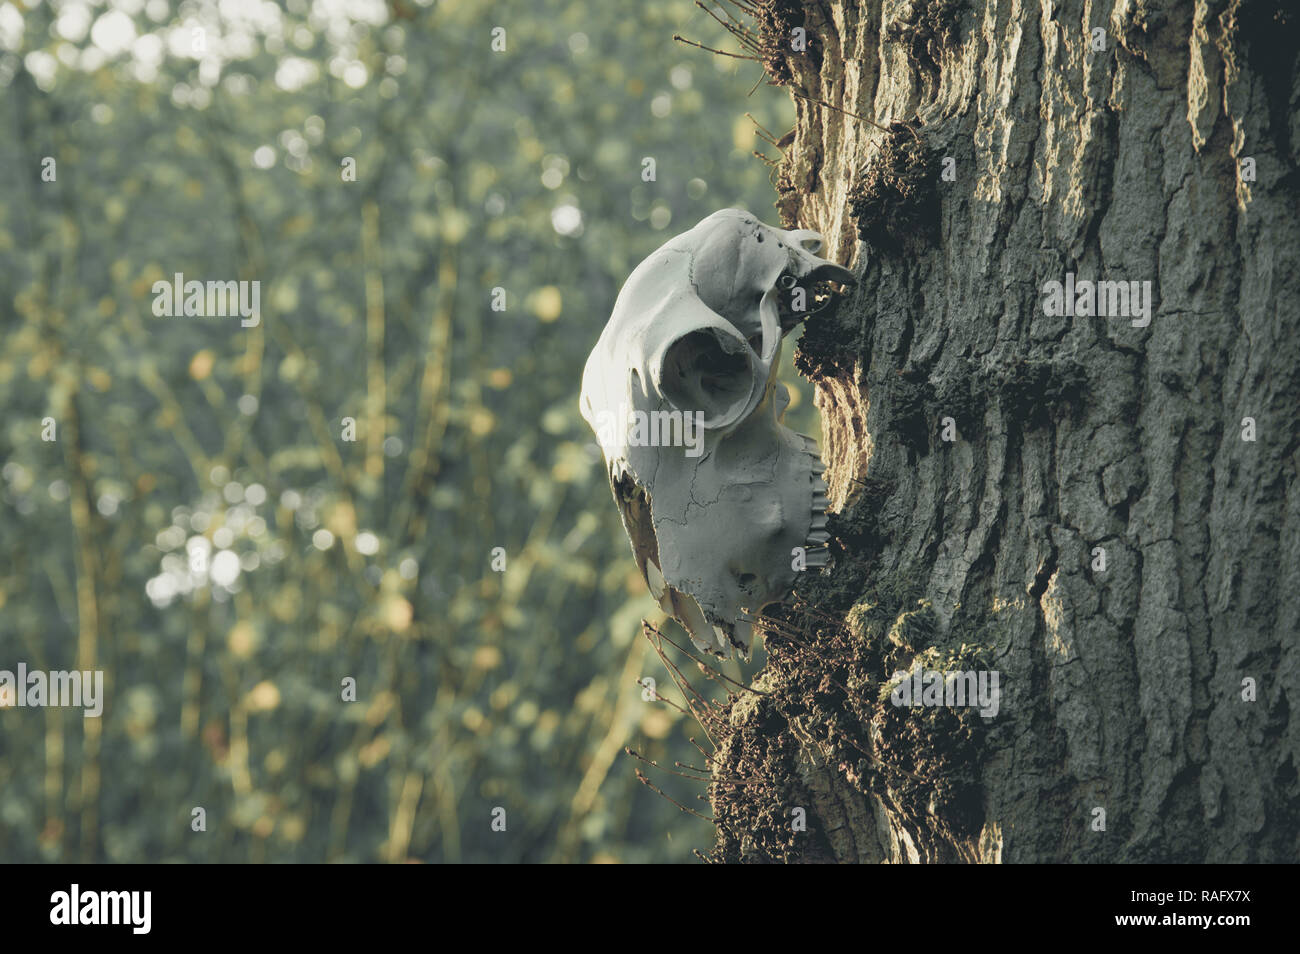 Ein Schaf Schadel An Einem Baumstamm Mit Einem Unscharfen Bild Hintergrund Mit Amuted Bearbeiten Stockfotografie Alamy